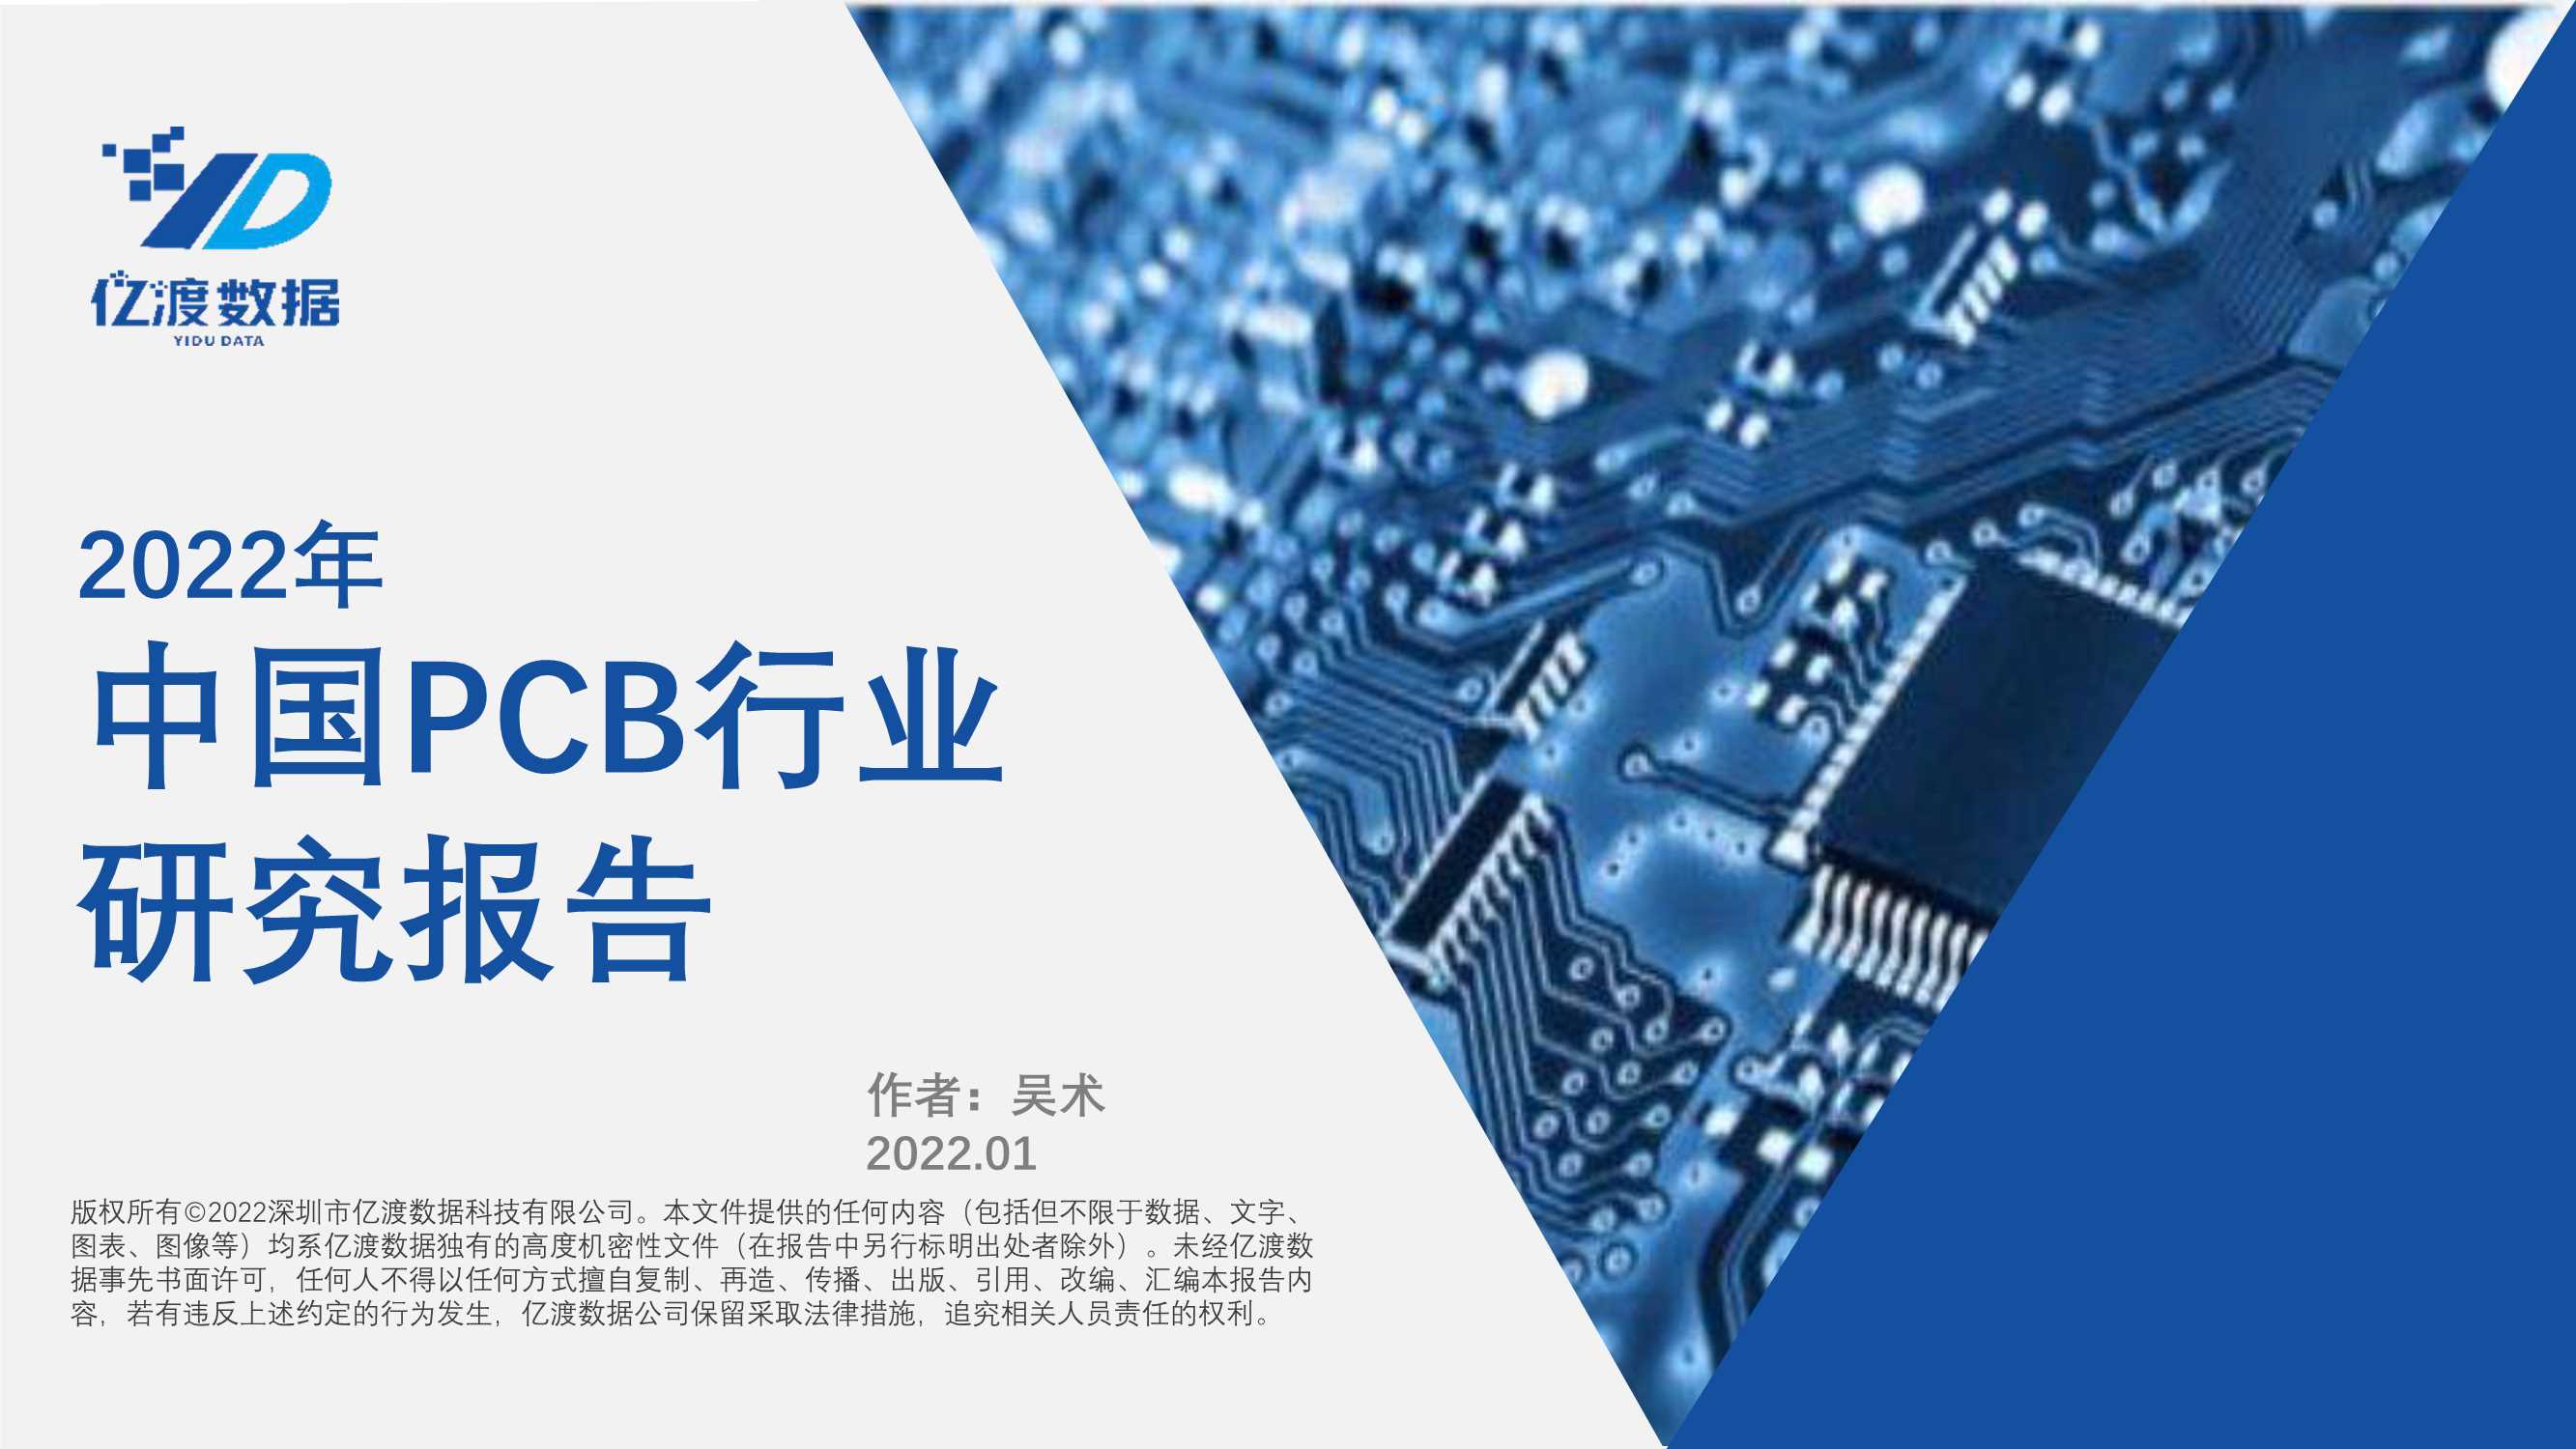 亿渡数据-2022年中国PCB行业研究报告-2022.02-37页